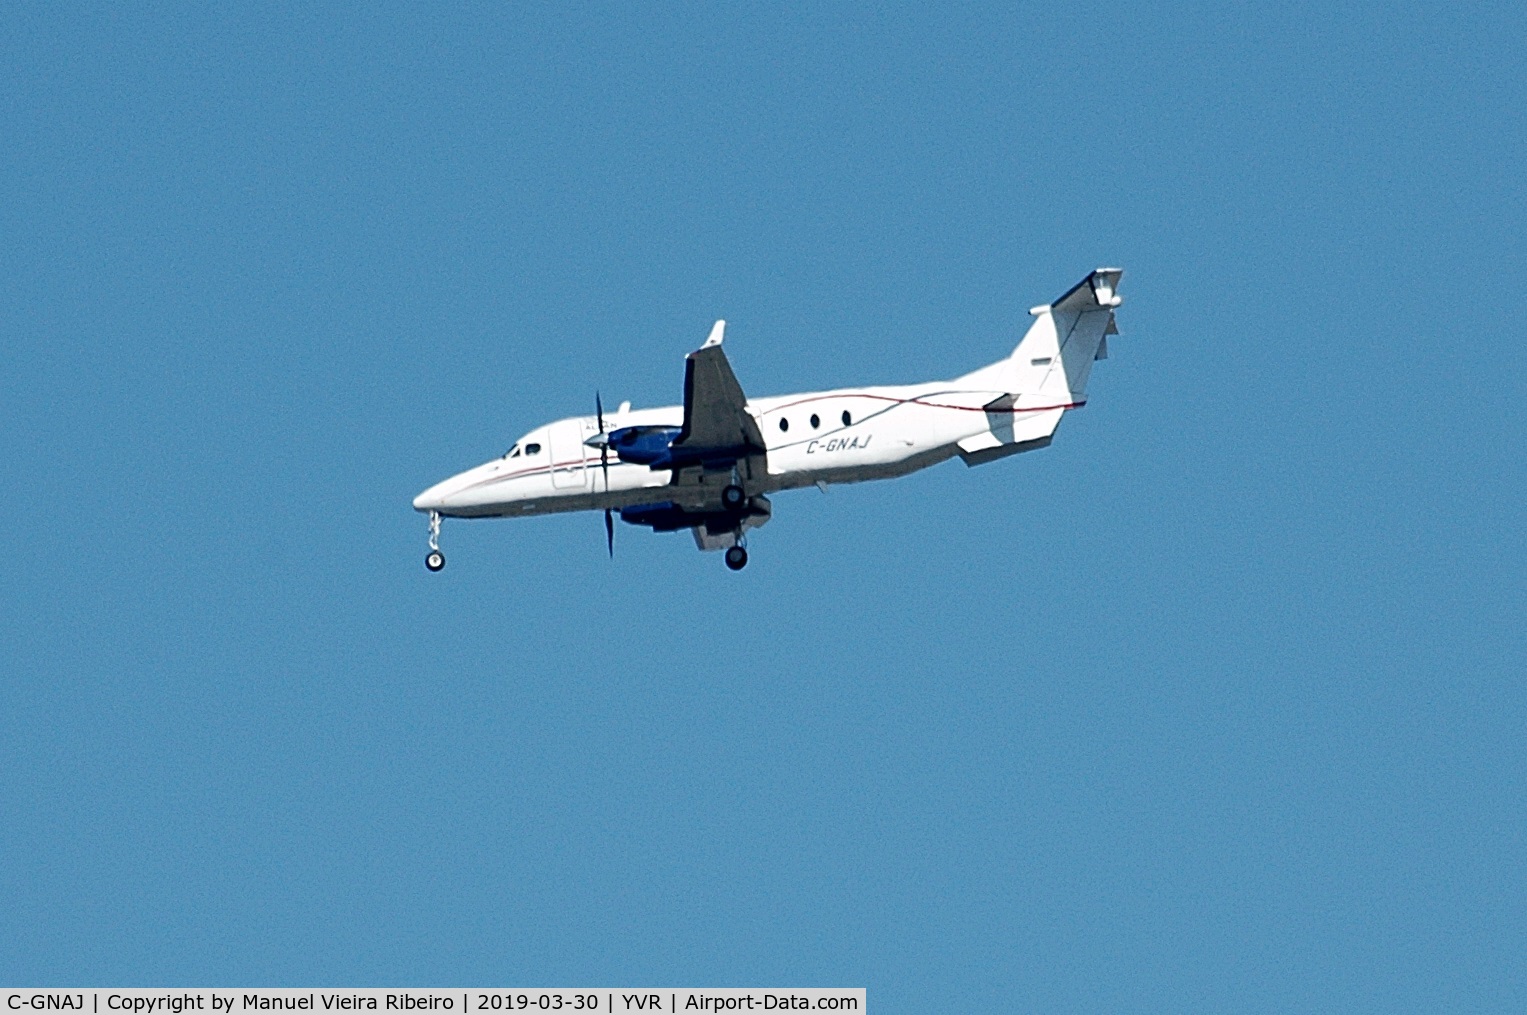 C-GNAJ, 1995 Beech 1900D C/N UE-147, Now operating with Alkan Air